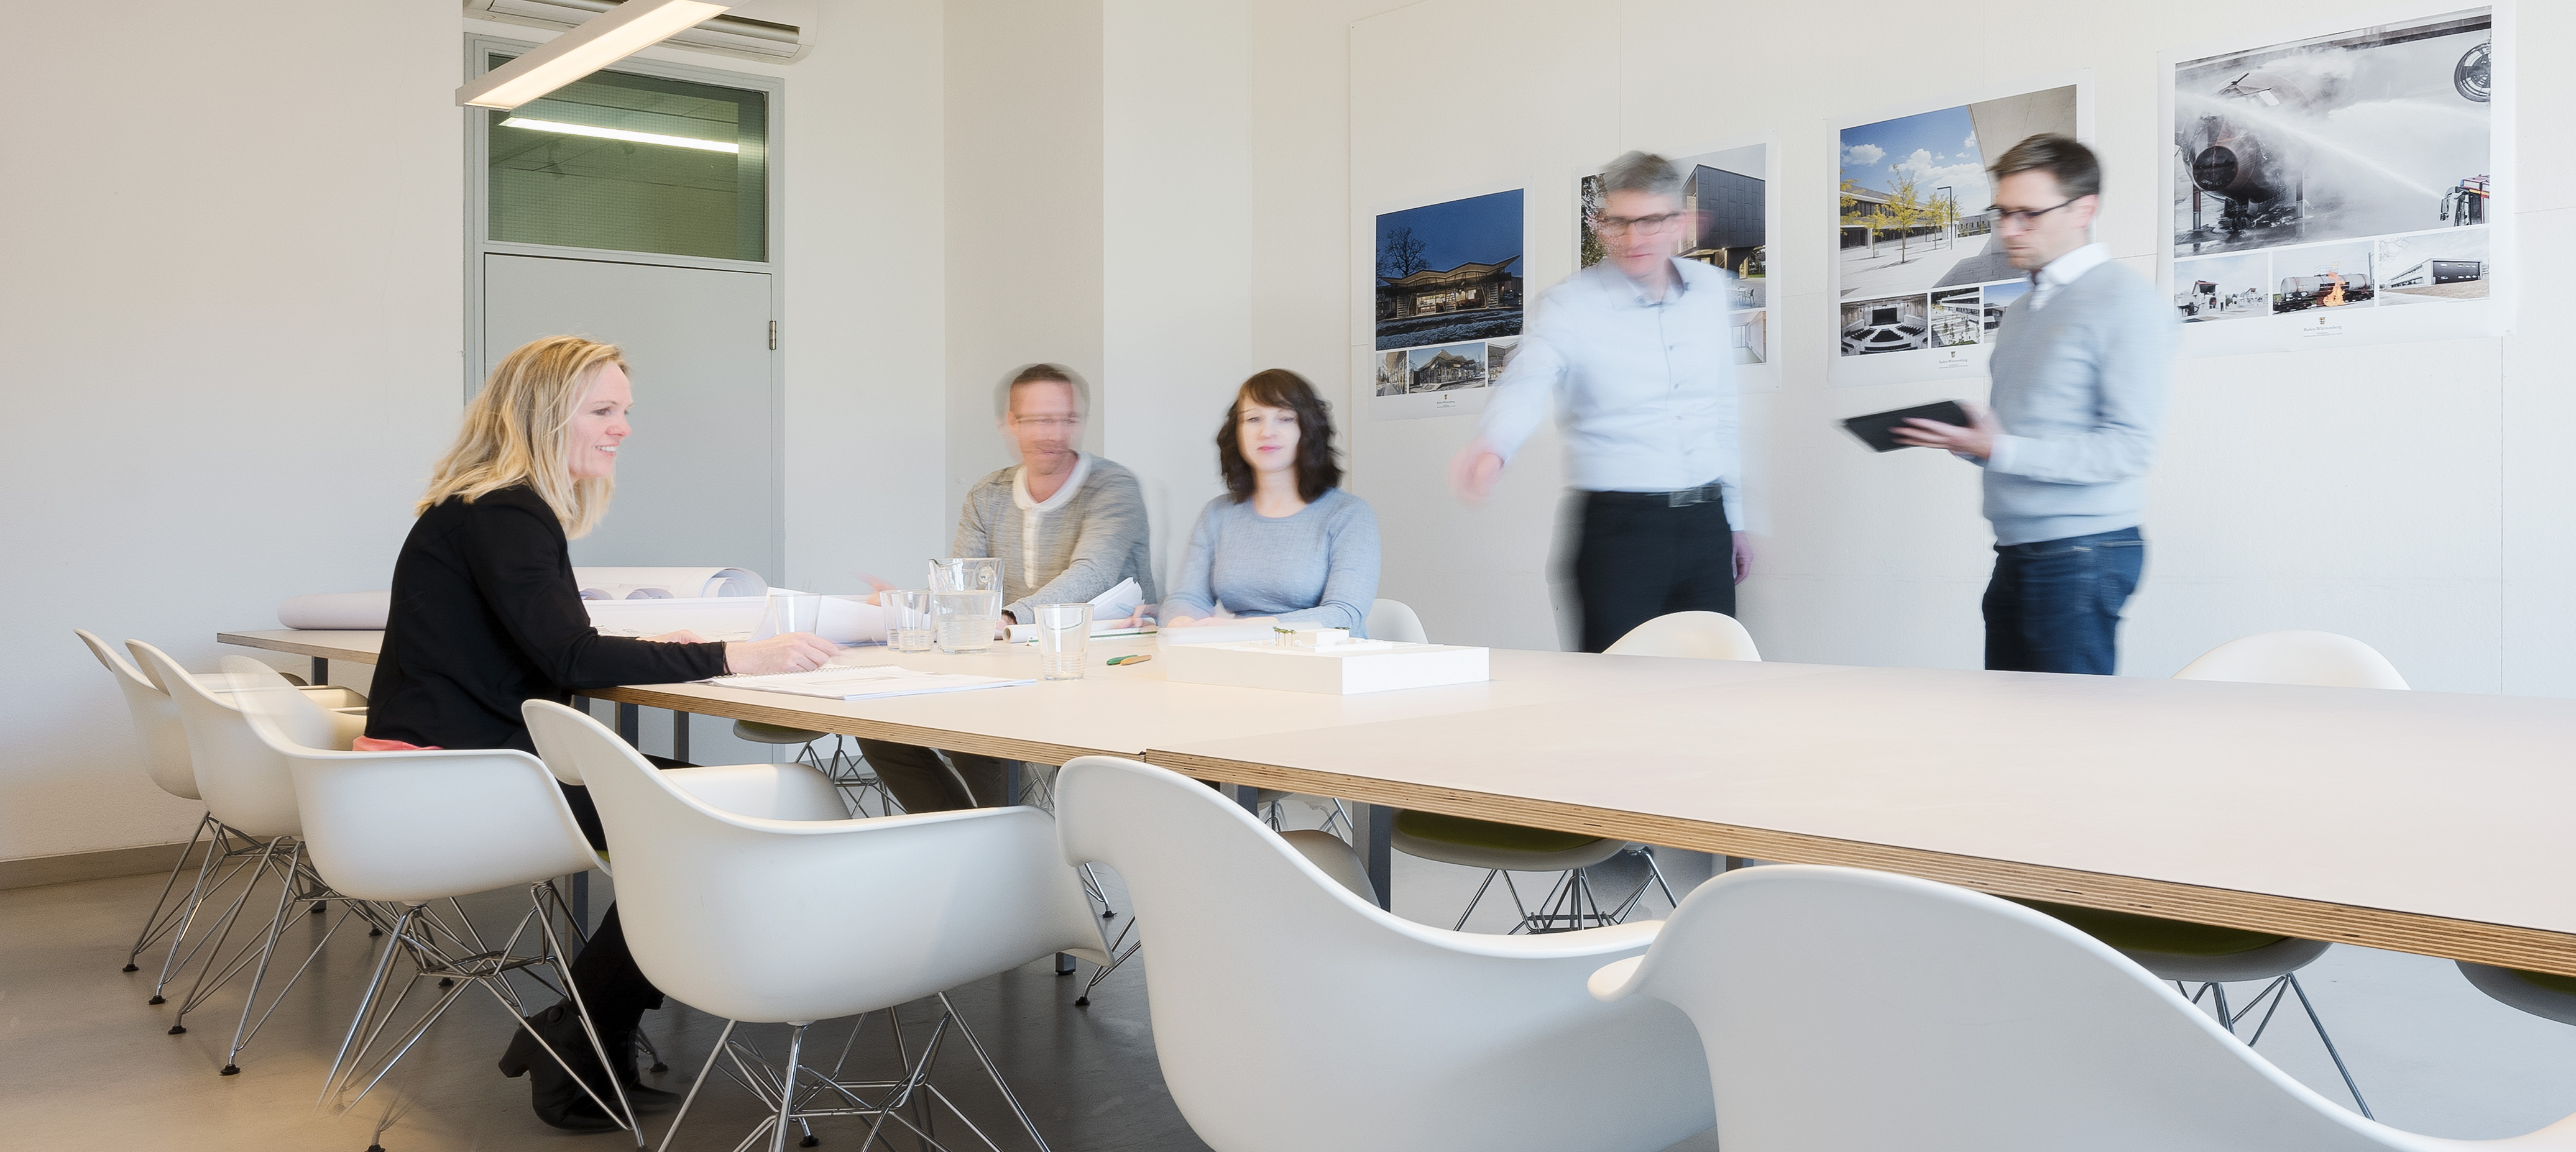 zwei Damen und drei Herren besprechen ein Architekturmodell auf einem Tisch in einem Besprechungsraum